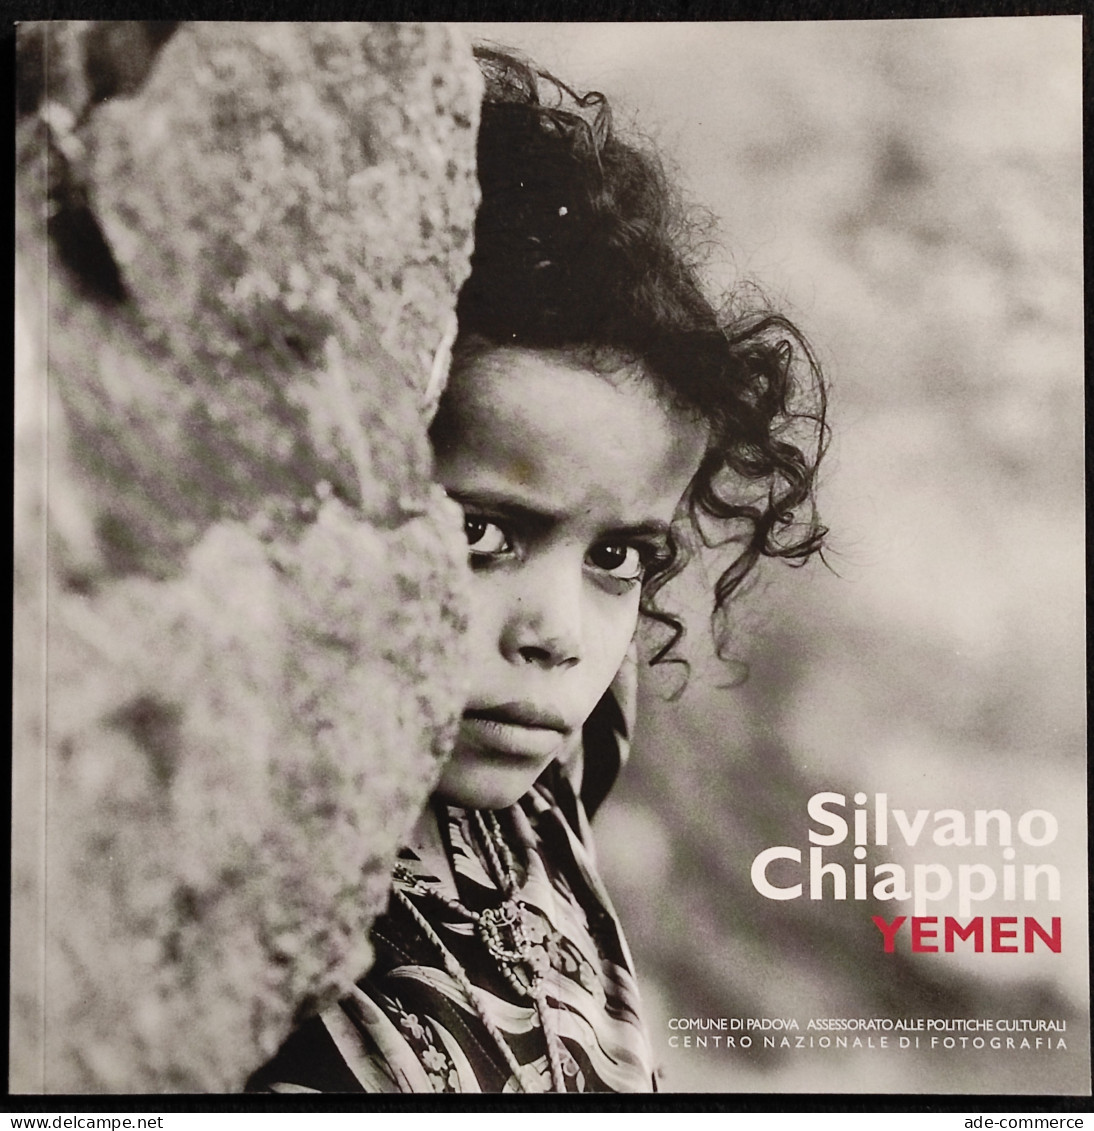 Silvano Chiappin - Yemen - E. Gusella - 2006 - Fotografia - Pictures